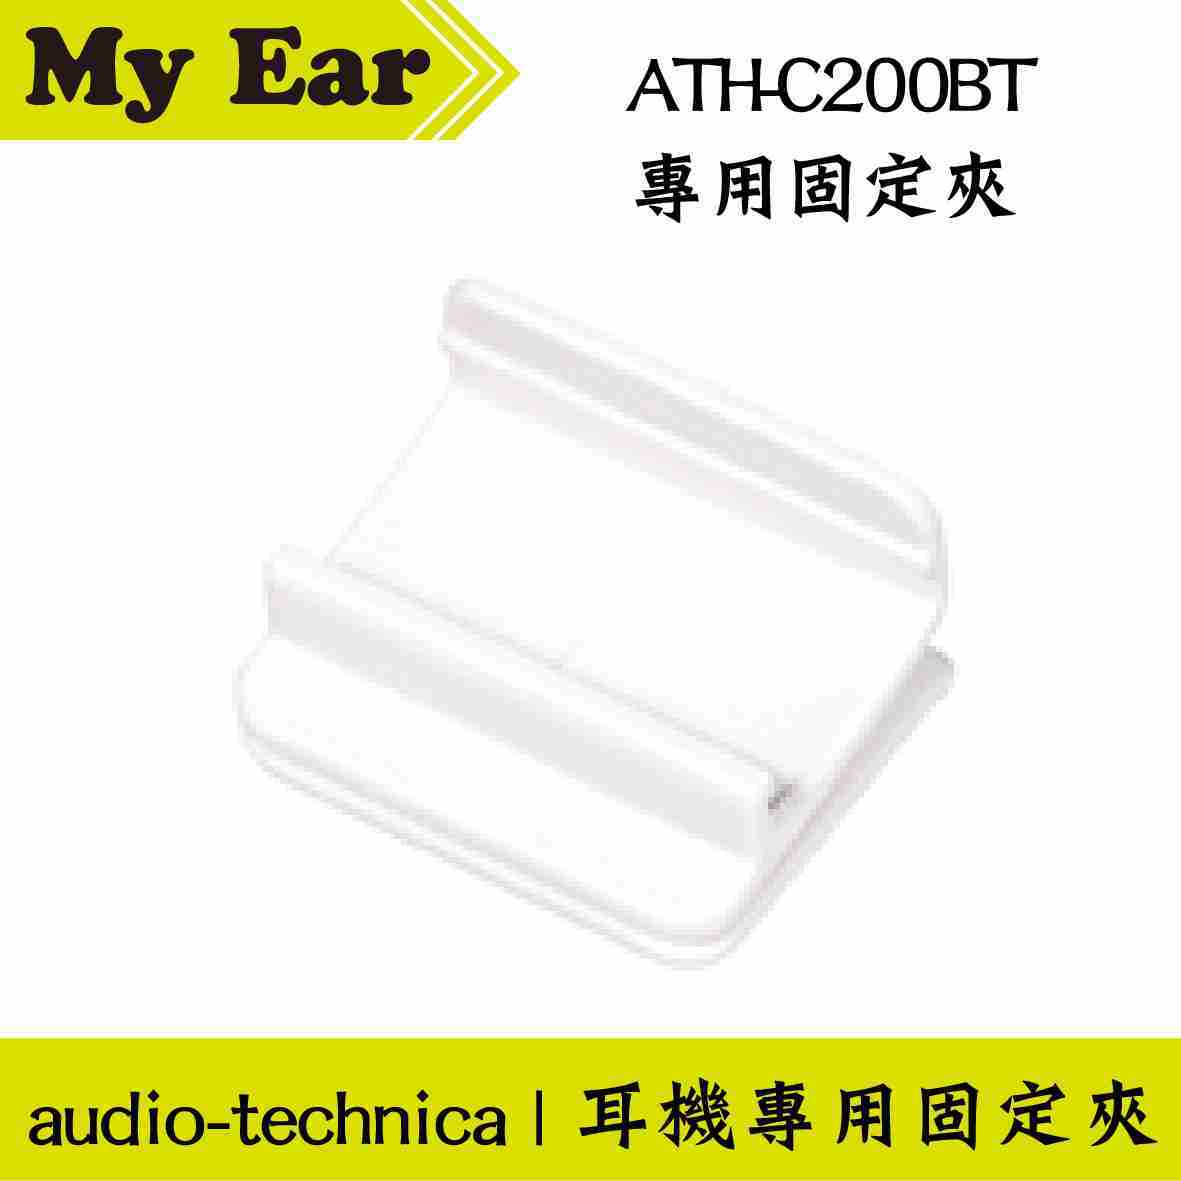 鐵三角 白色 適用 ATH-C200BT 固定夾 耳機 專用夾 | My Ear 耳機專門店